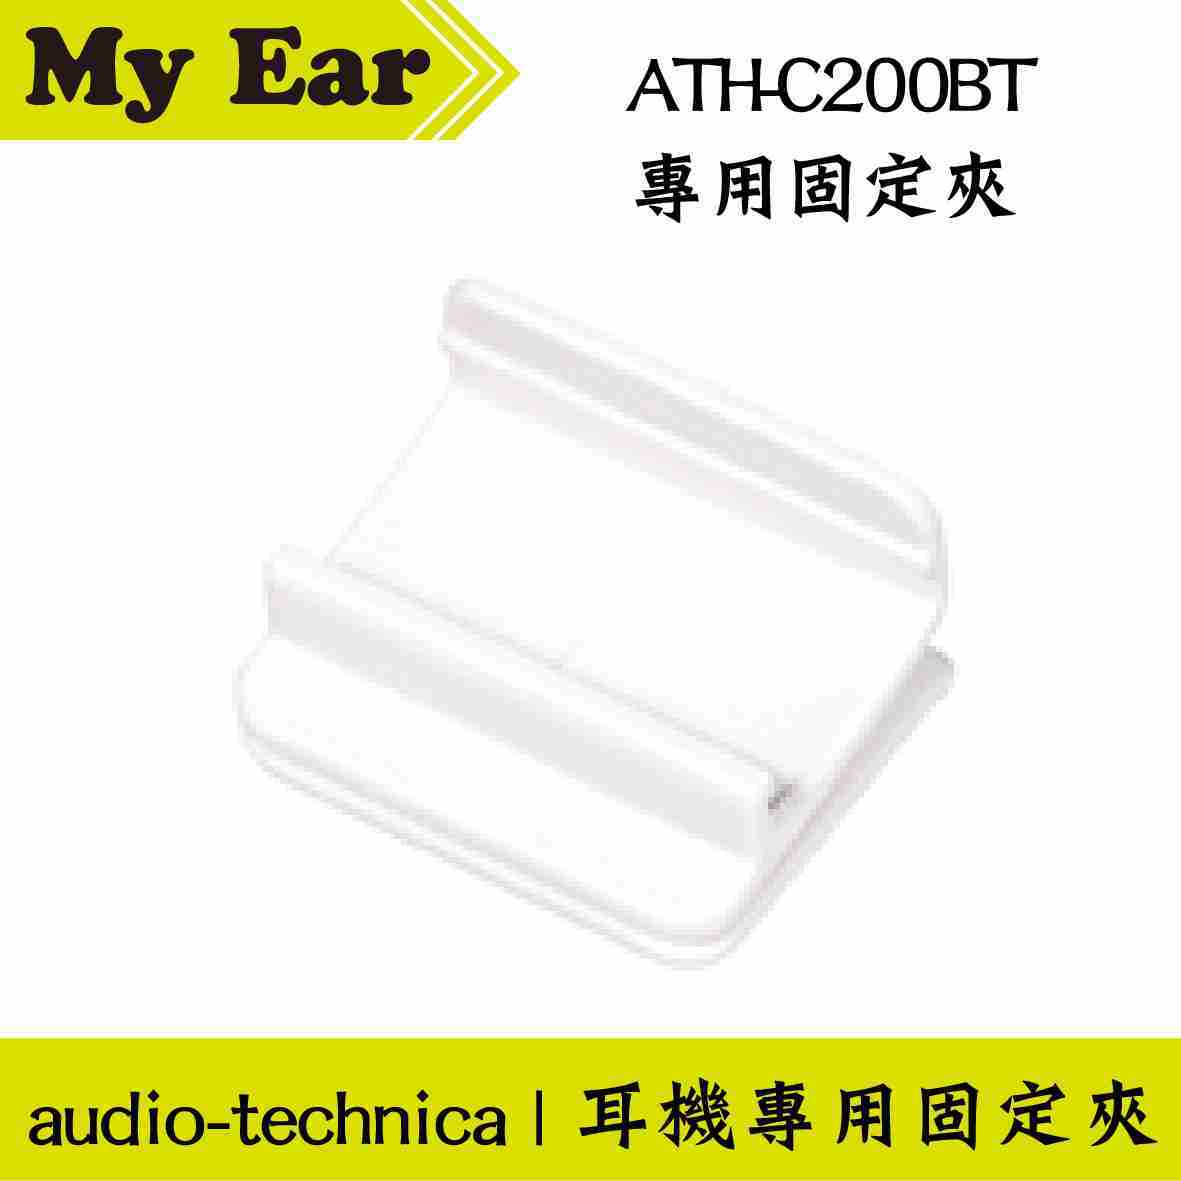 鐵三角 白色 適用 ATH-C200BT 固定夾 耳機 專用夾 | My Ear 耳機專門店